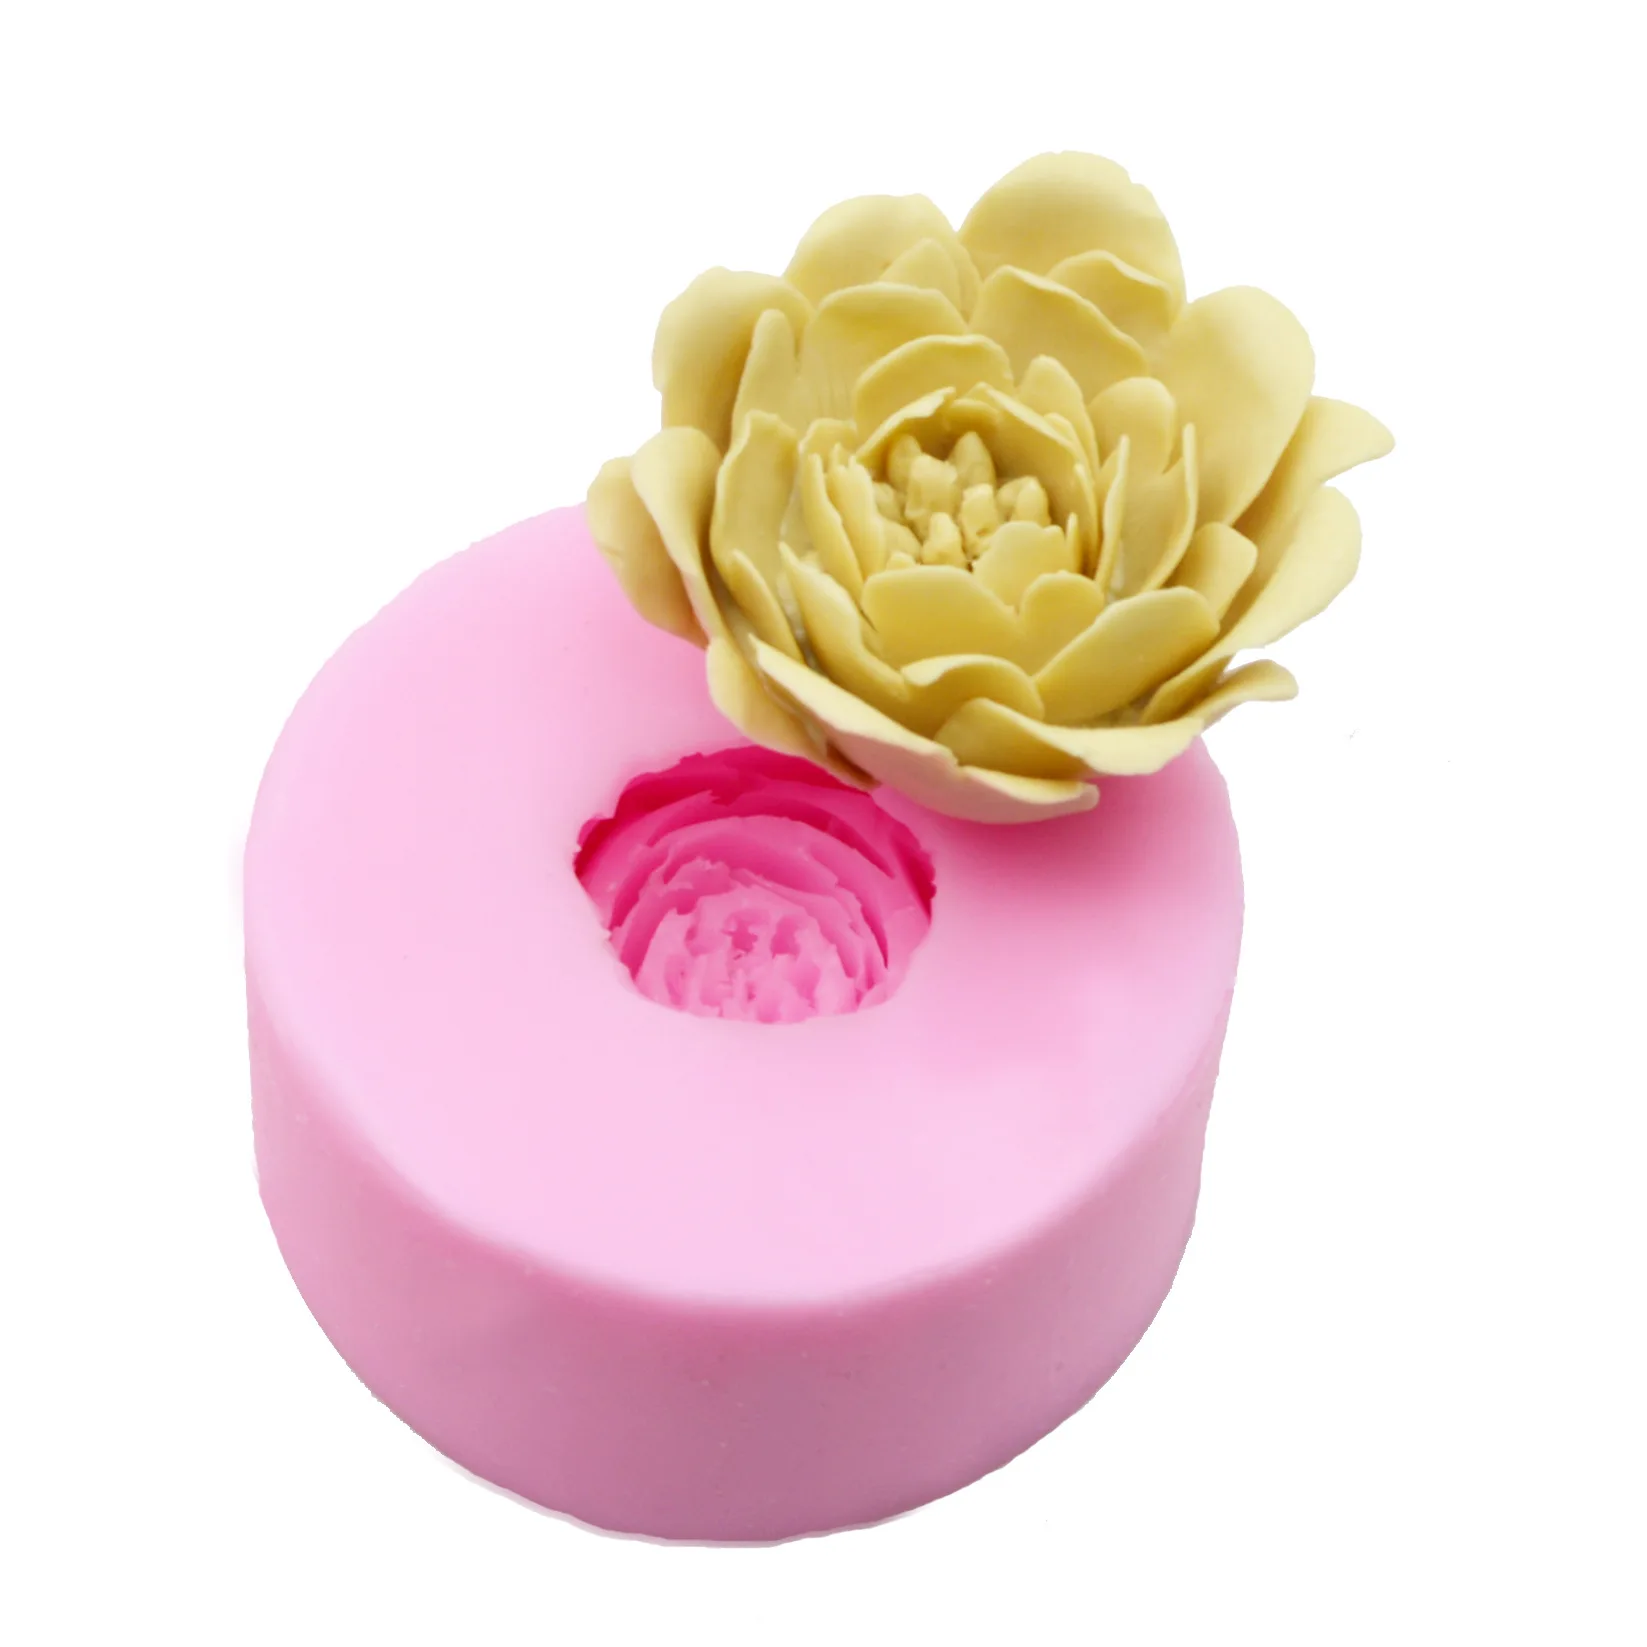 Фото Новая 3D Цветочная форма для мыла маленького размера пион помадка торт